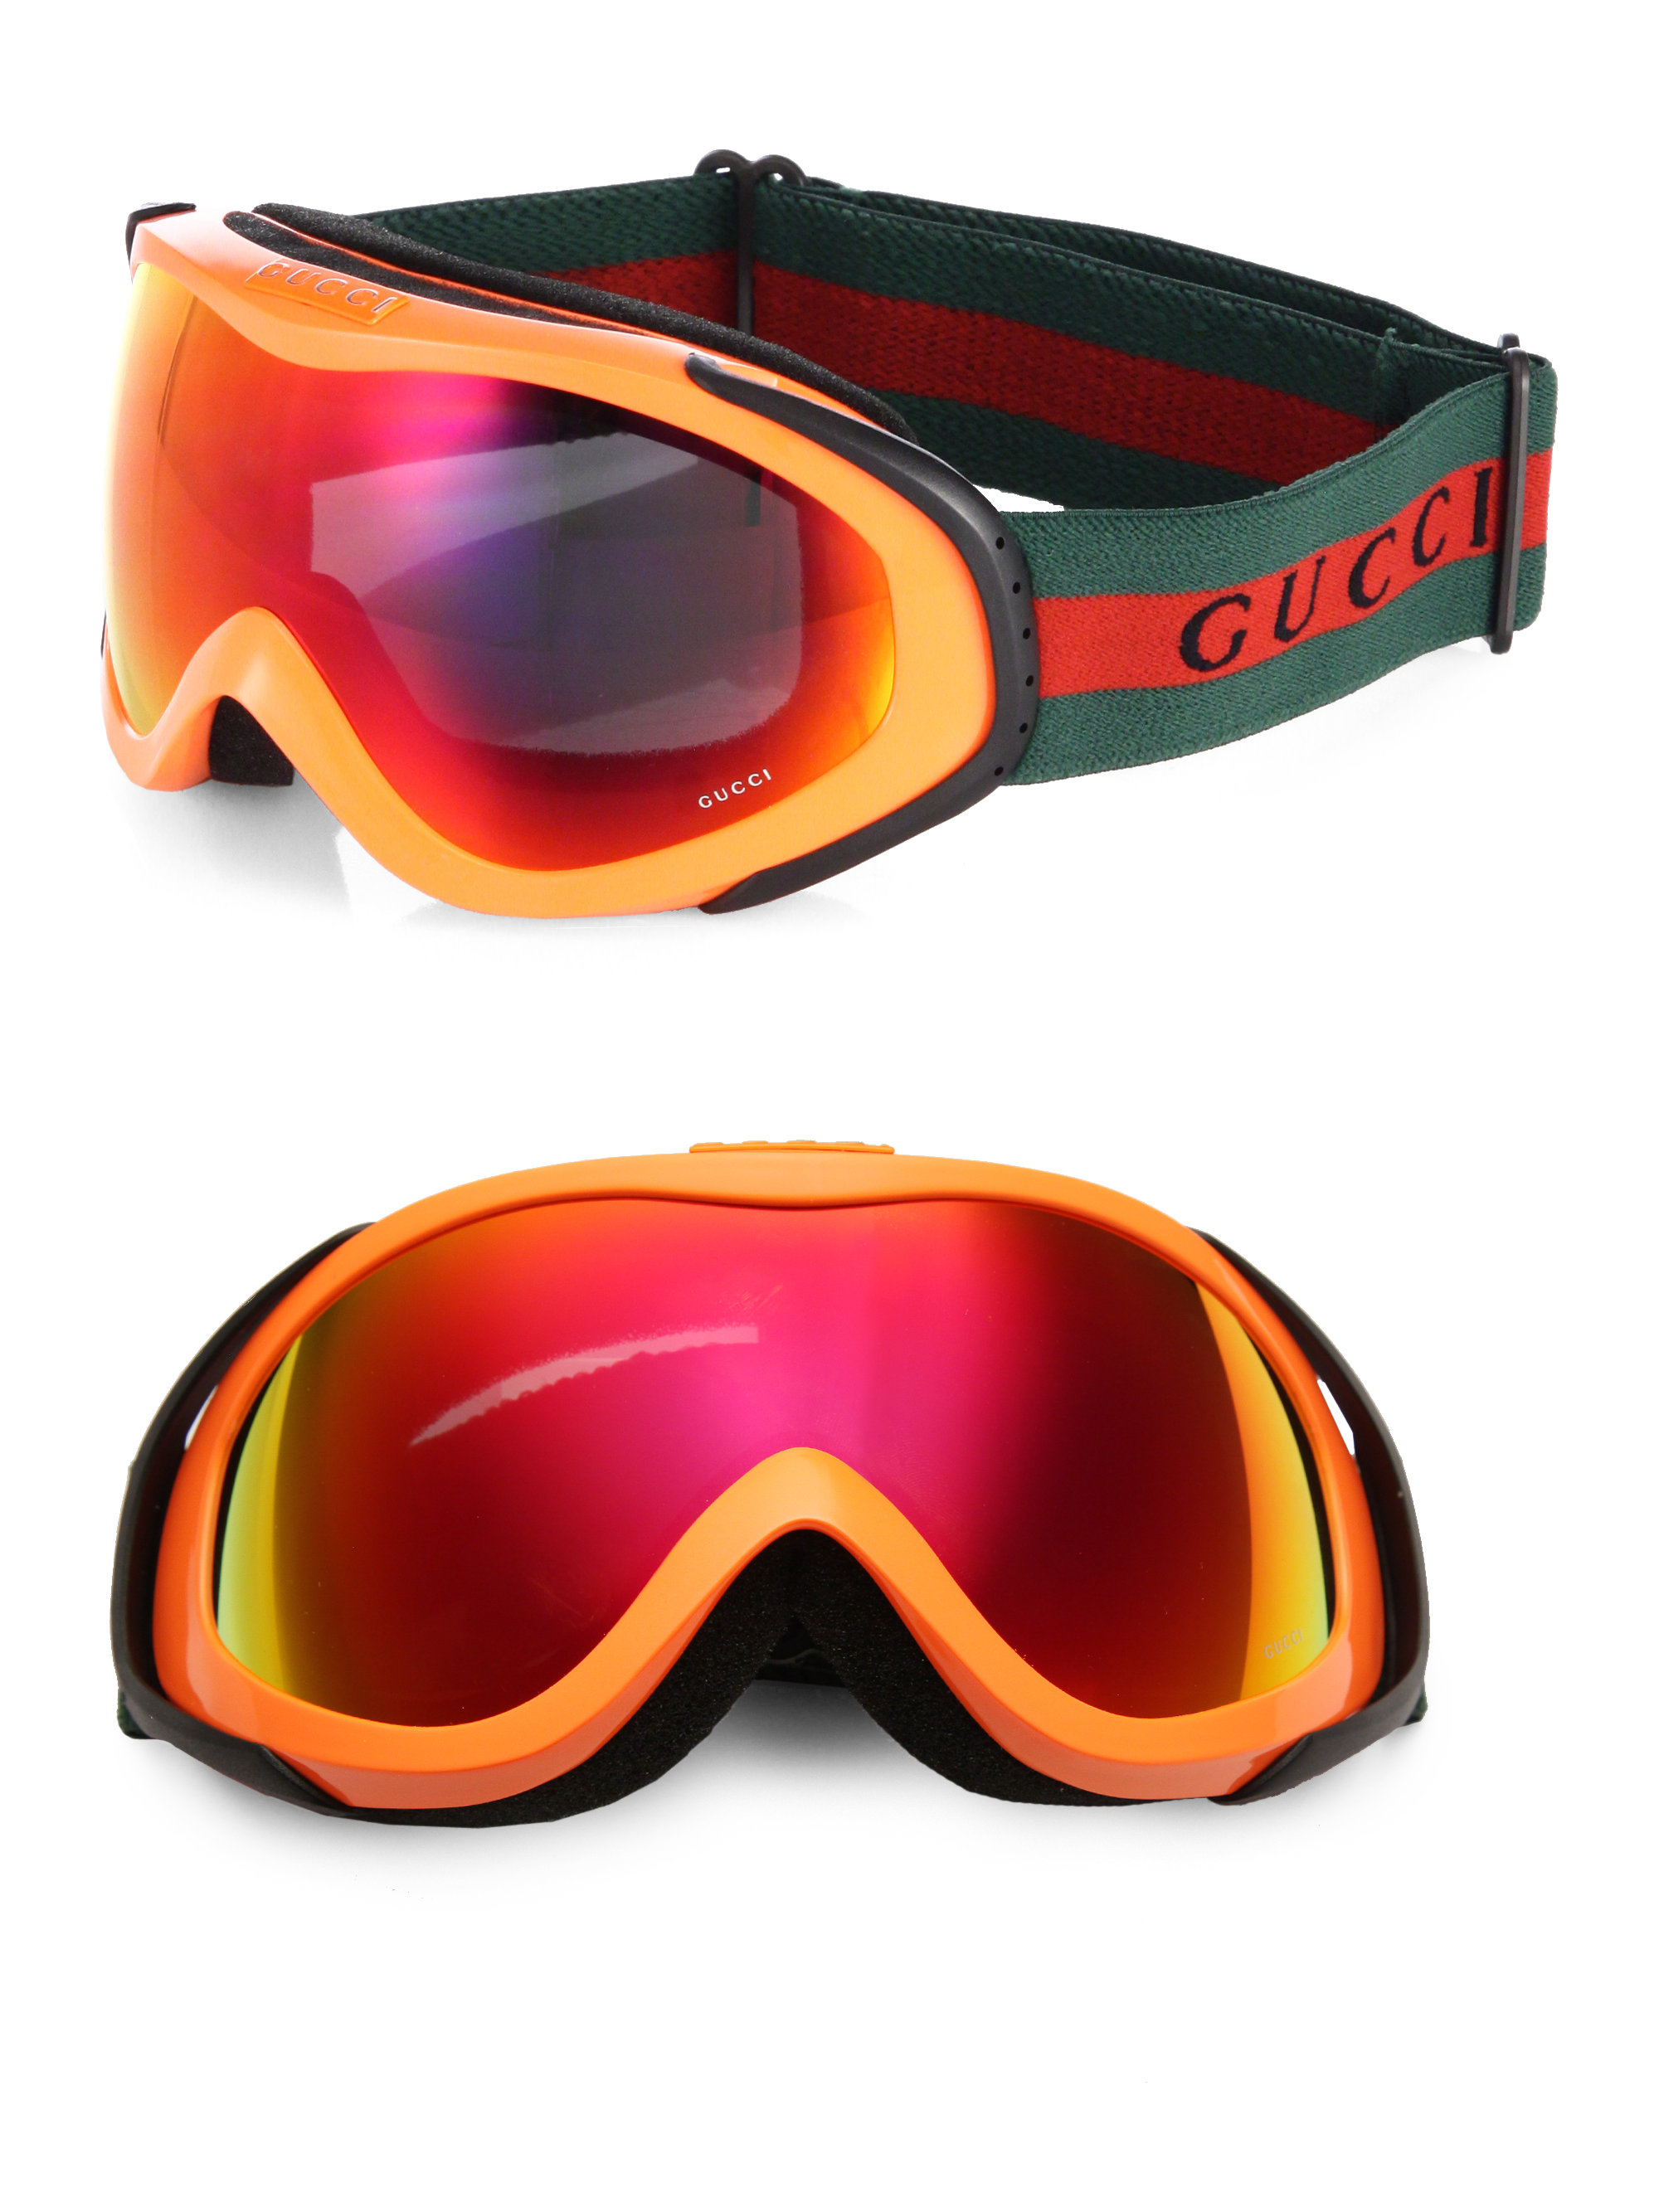 Gucci, Other, Authentic Gucci Ski Goggles